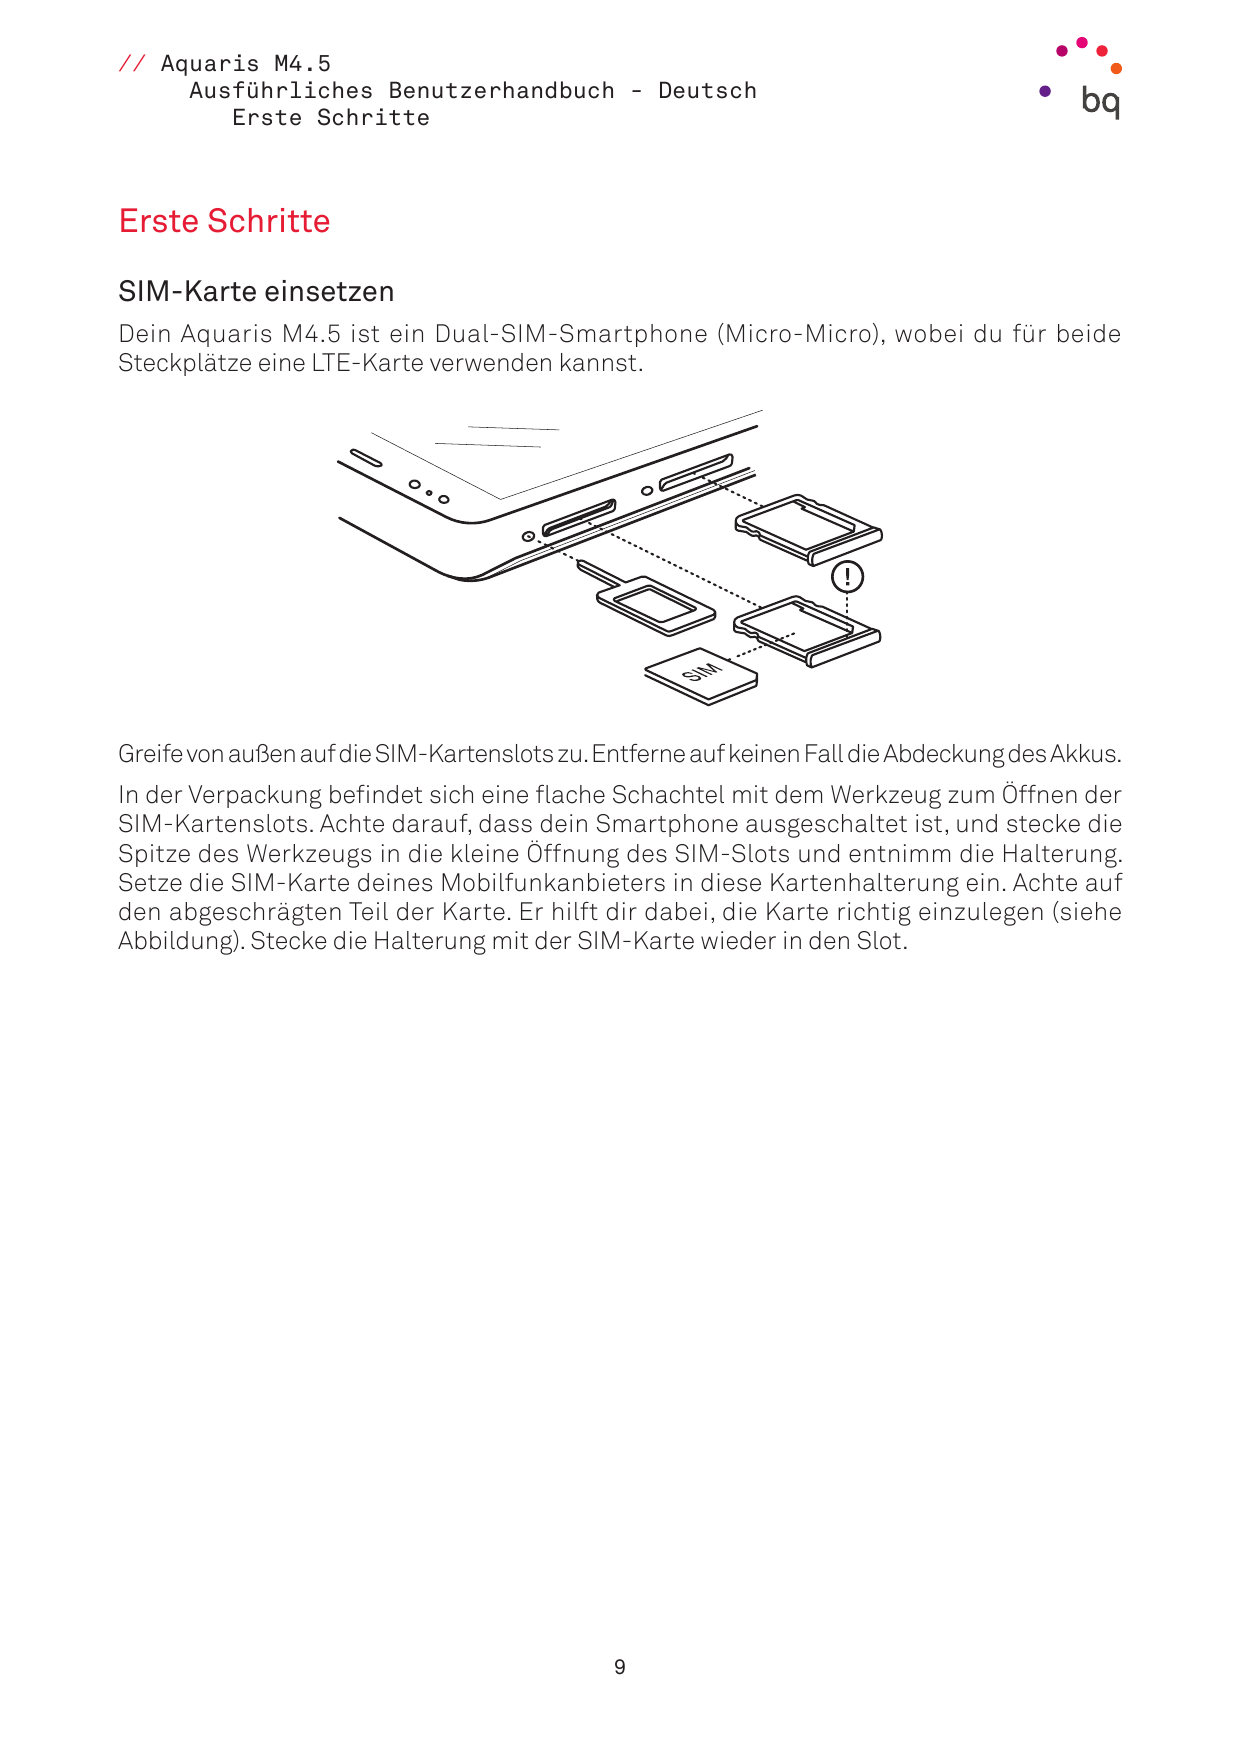 // Aquaris M4.5Ausführliches Benutzerhandbuch - DeutschErste SchritteErste SchritteSIM-Karte einsetzenDein Aquaris M4.5 ist ein 